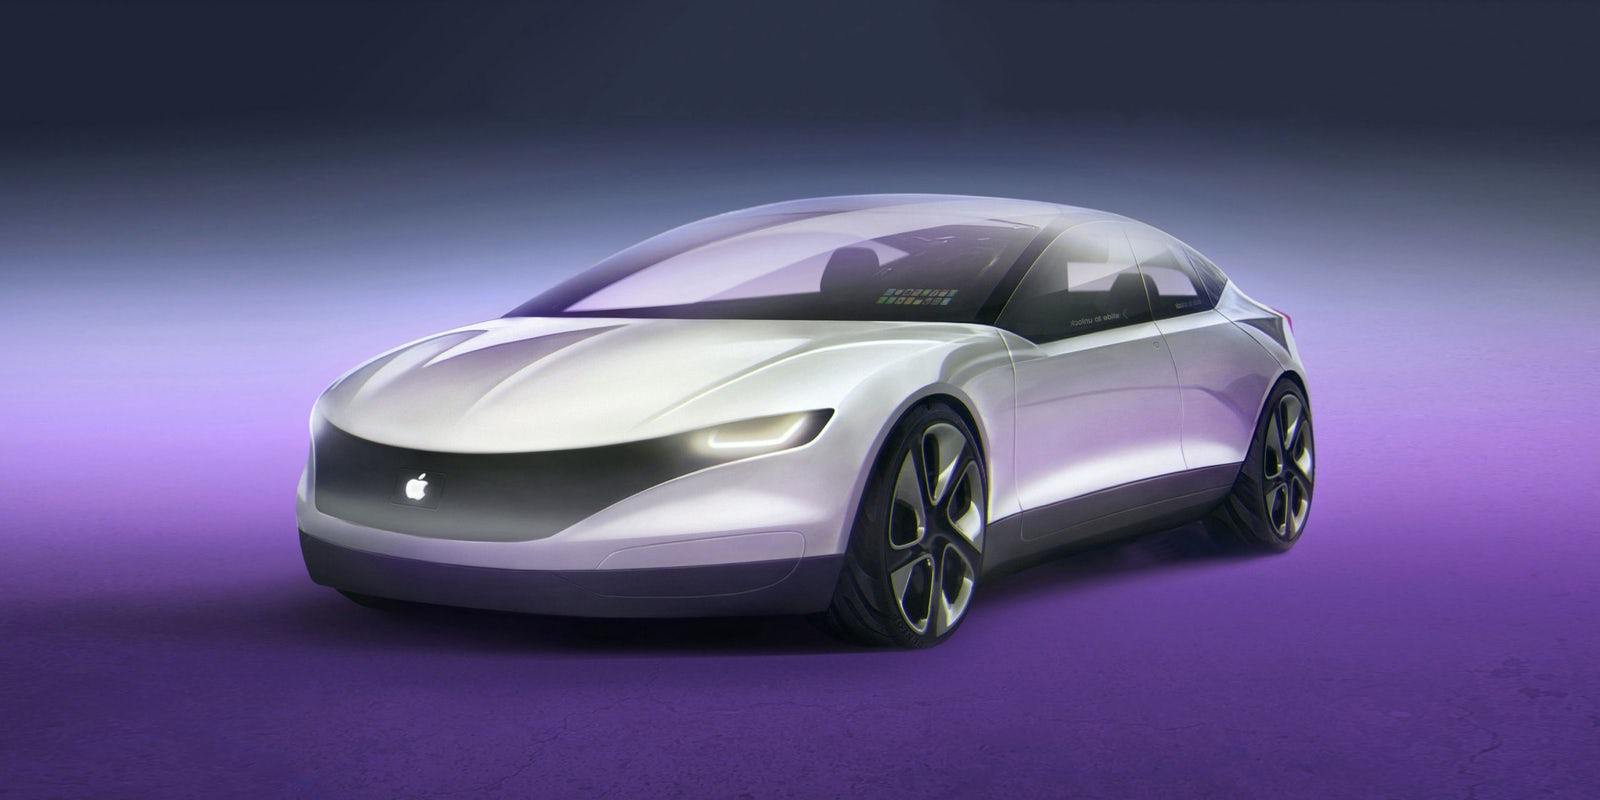 Apple ведет переговоры с Toyota о производстве Apple Car: отчет